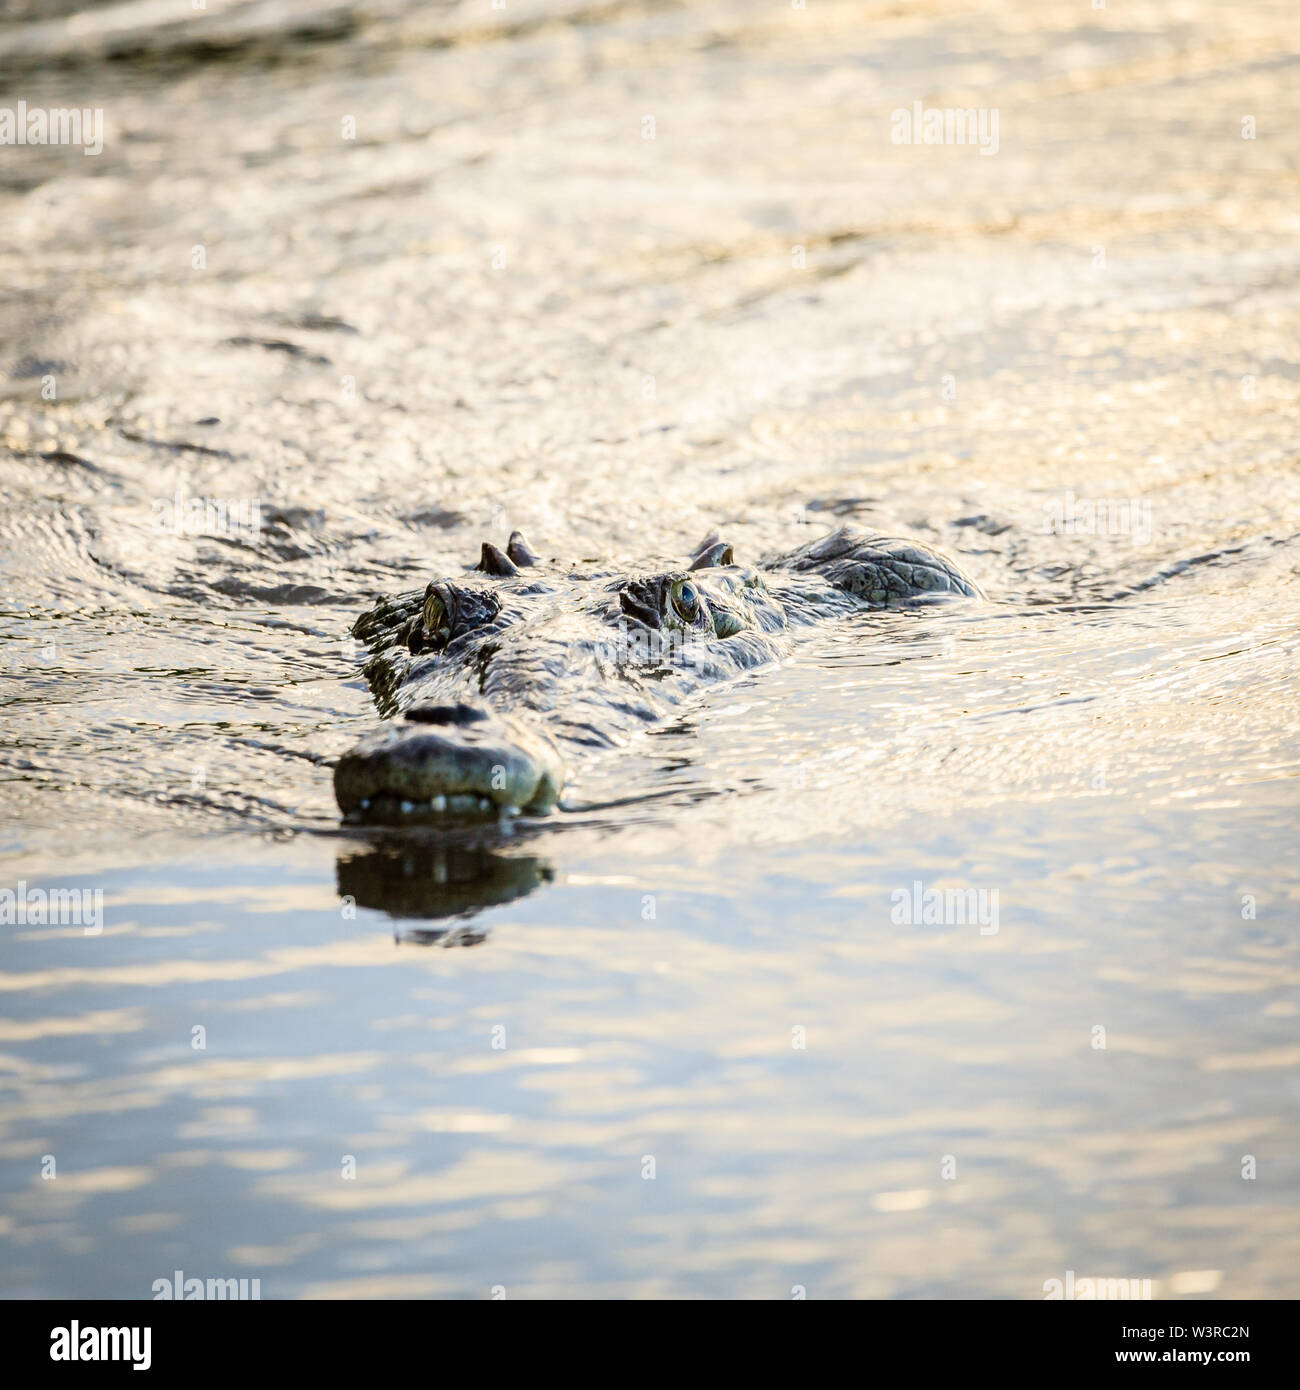 Crocodile swimming in the River Tarcoles in Costa Rica Stock Photo